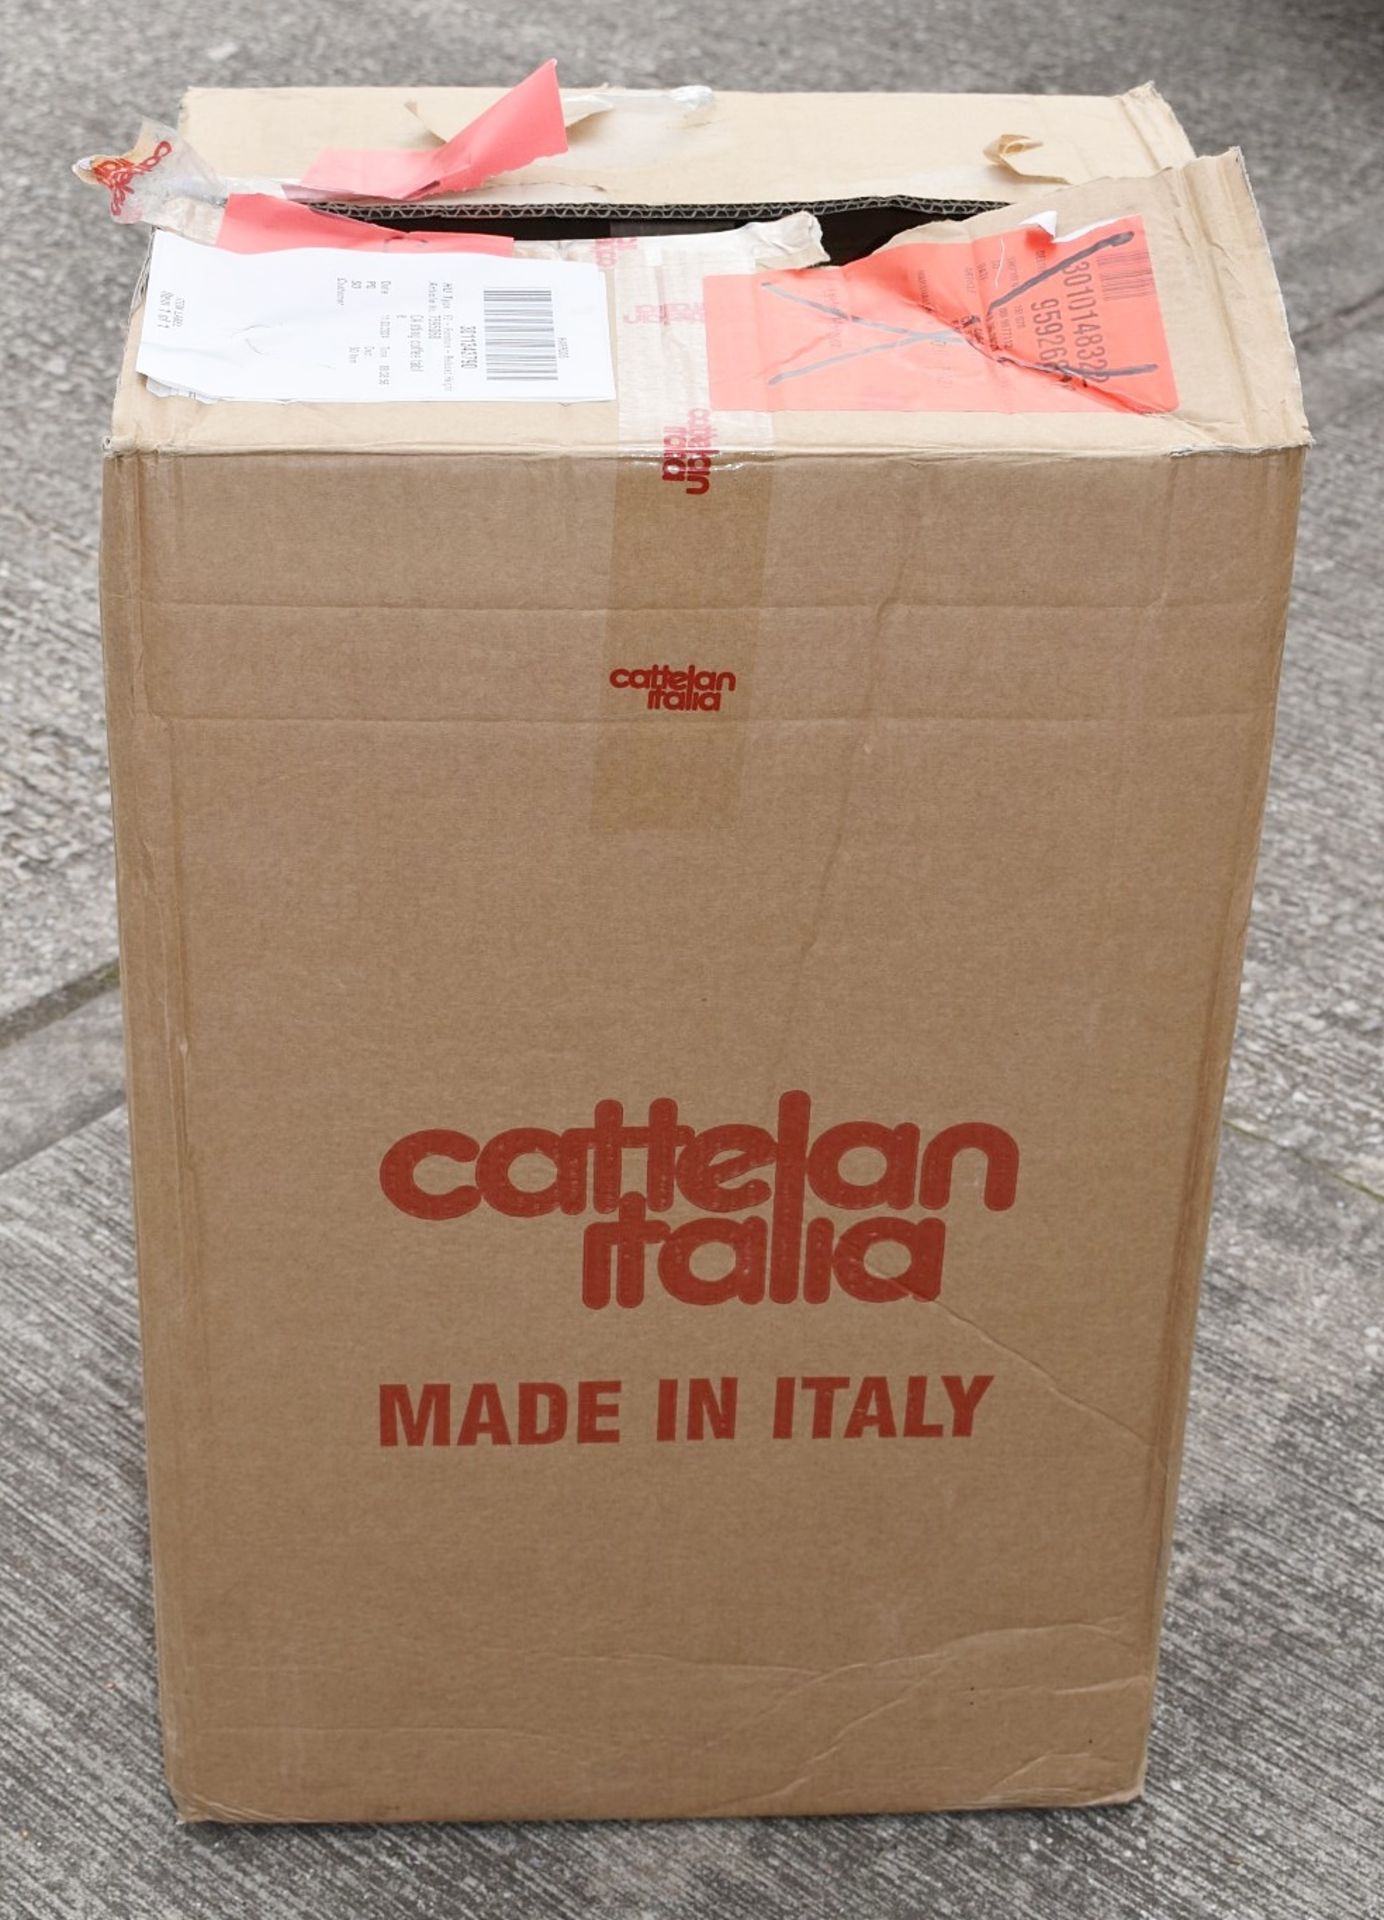 1 x CATTELAN ITALIA 'Sting' Italian Designer Side Table - Original Price £383.00 - Unused Boxed - Image 8 of 8